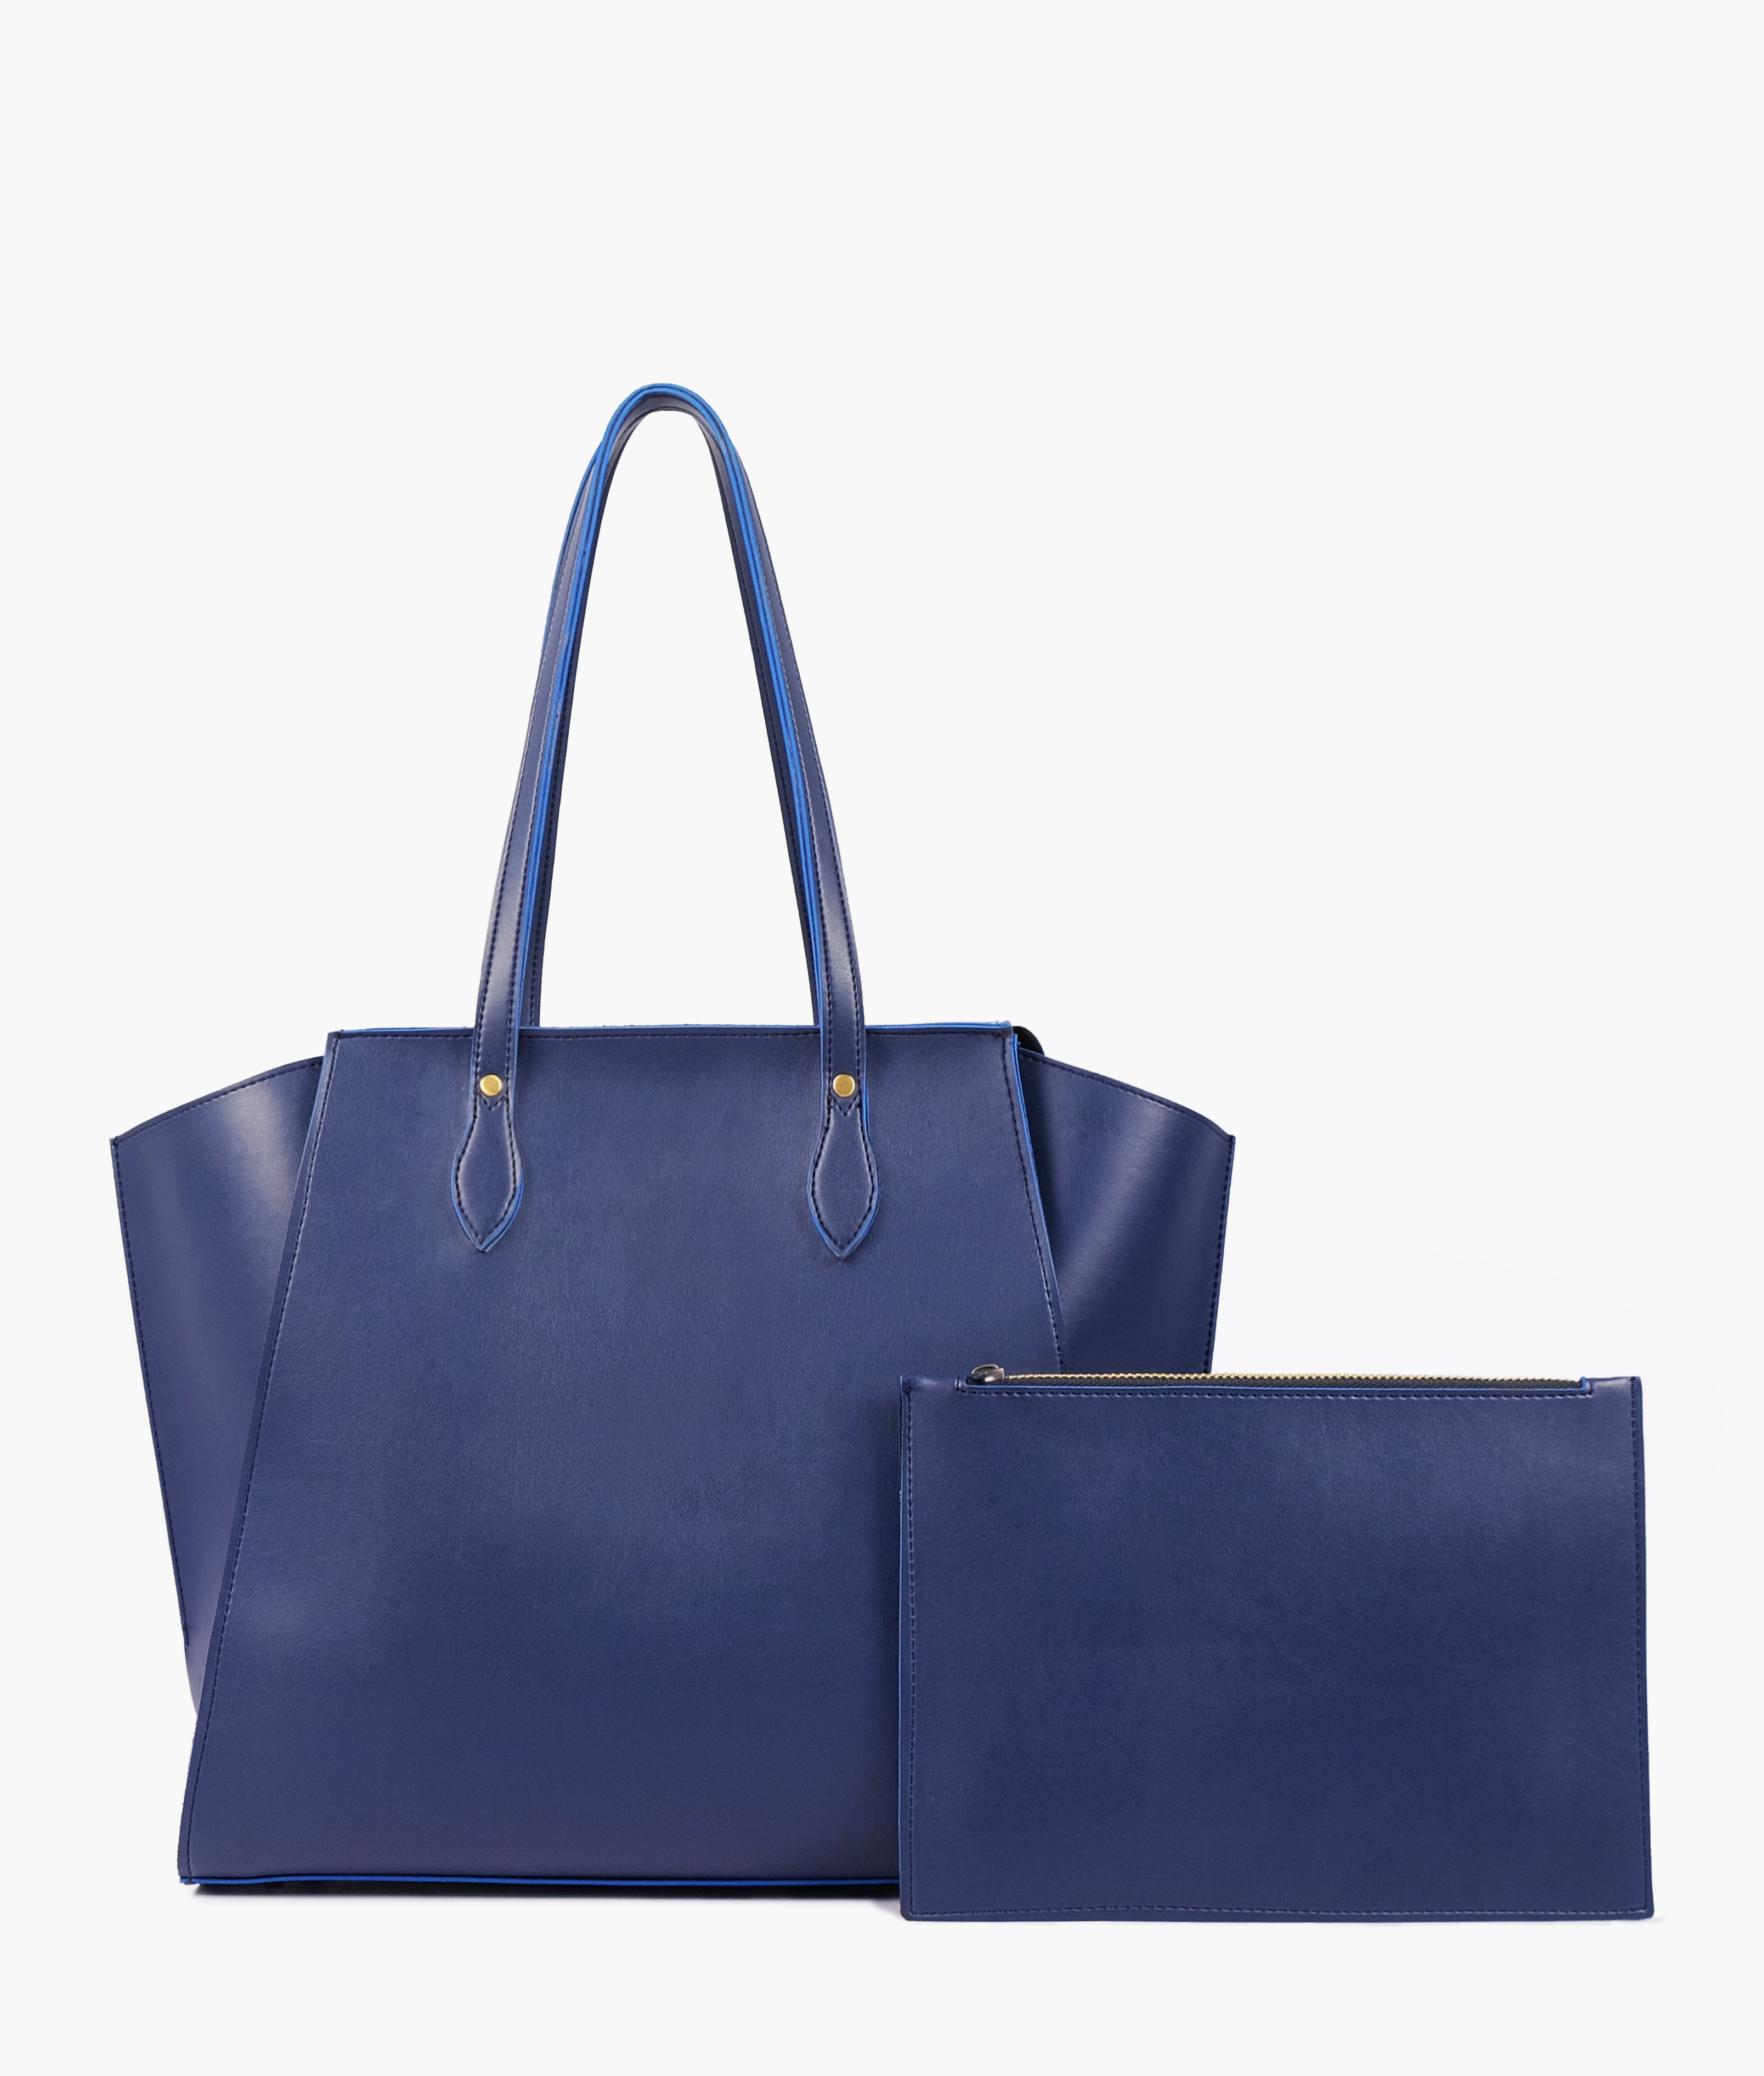 Blue classic tote bag